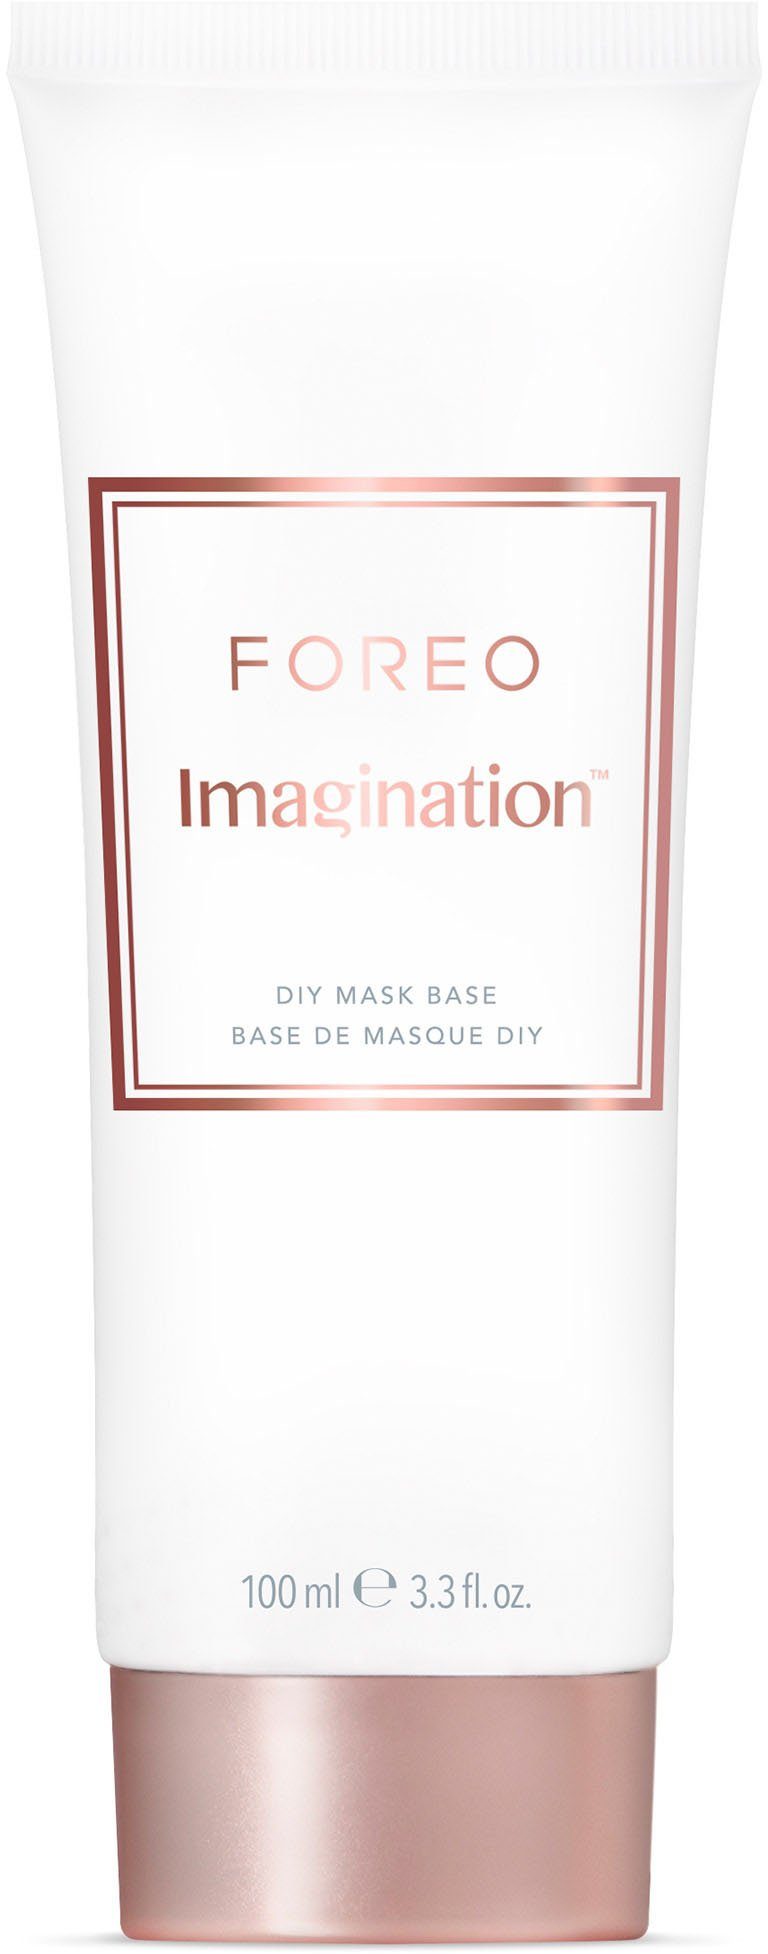 Base 100ml Imagination FOREO Gesichtsmaske Mask DIY